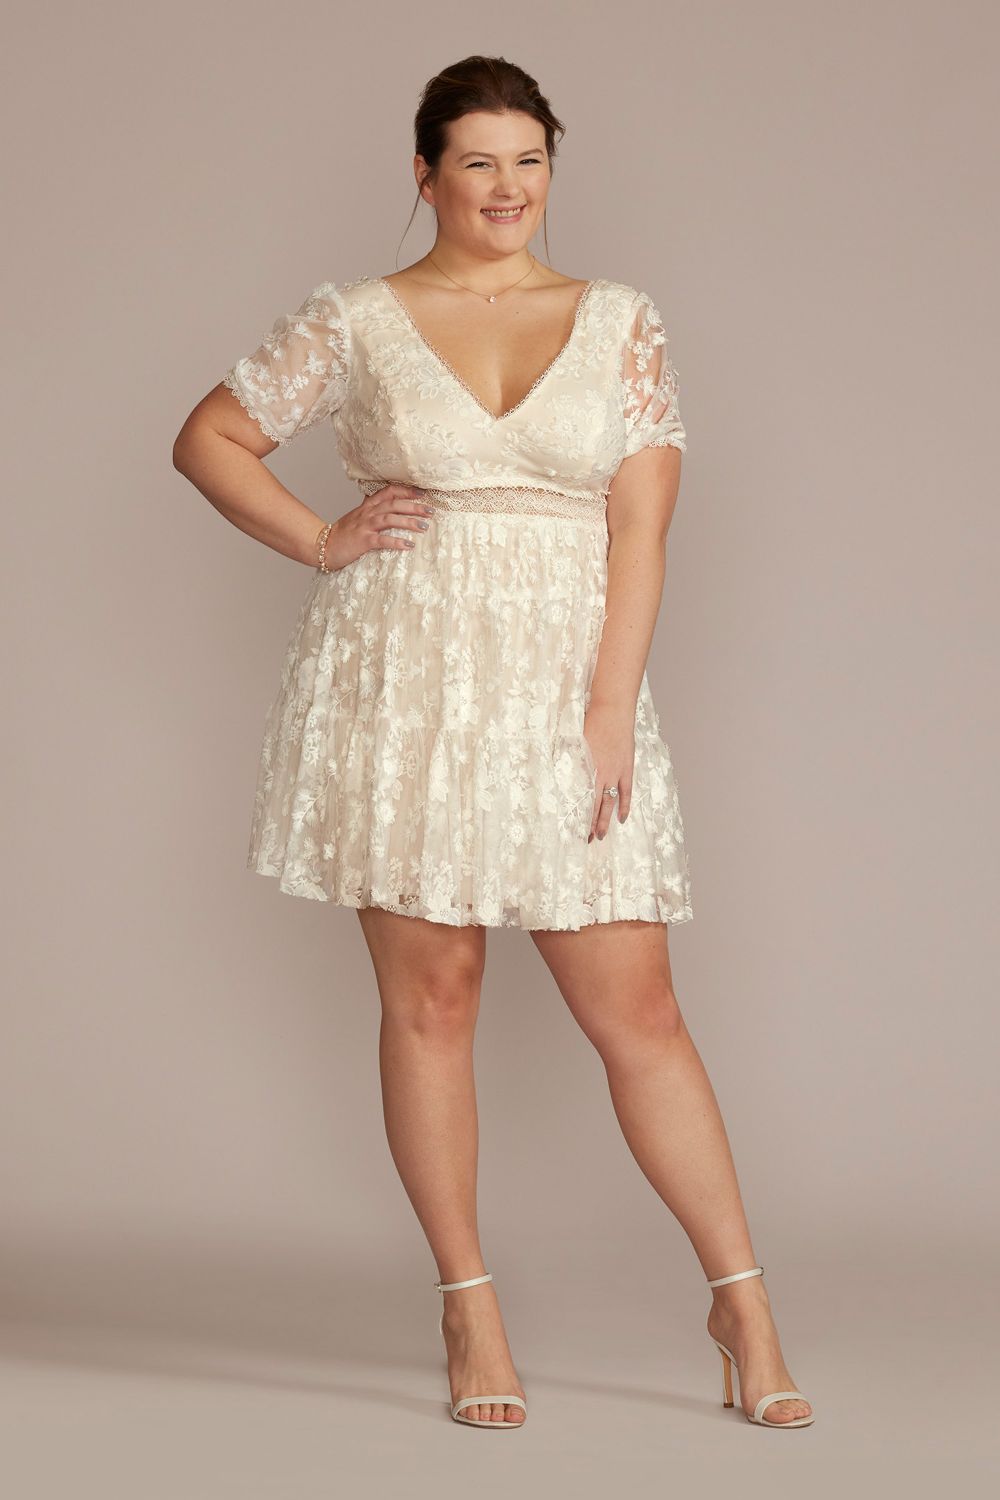 3D Floral Lace V-Neck Short Plus Size Bridal Shower Dress